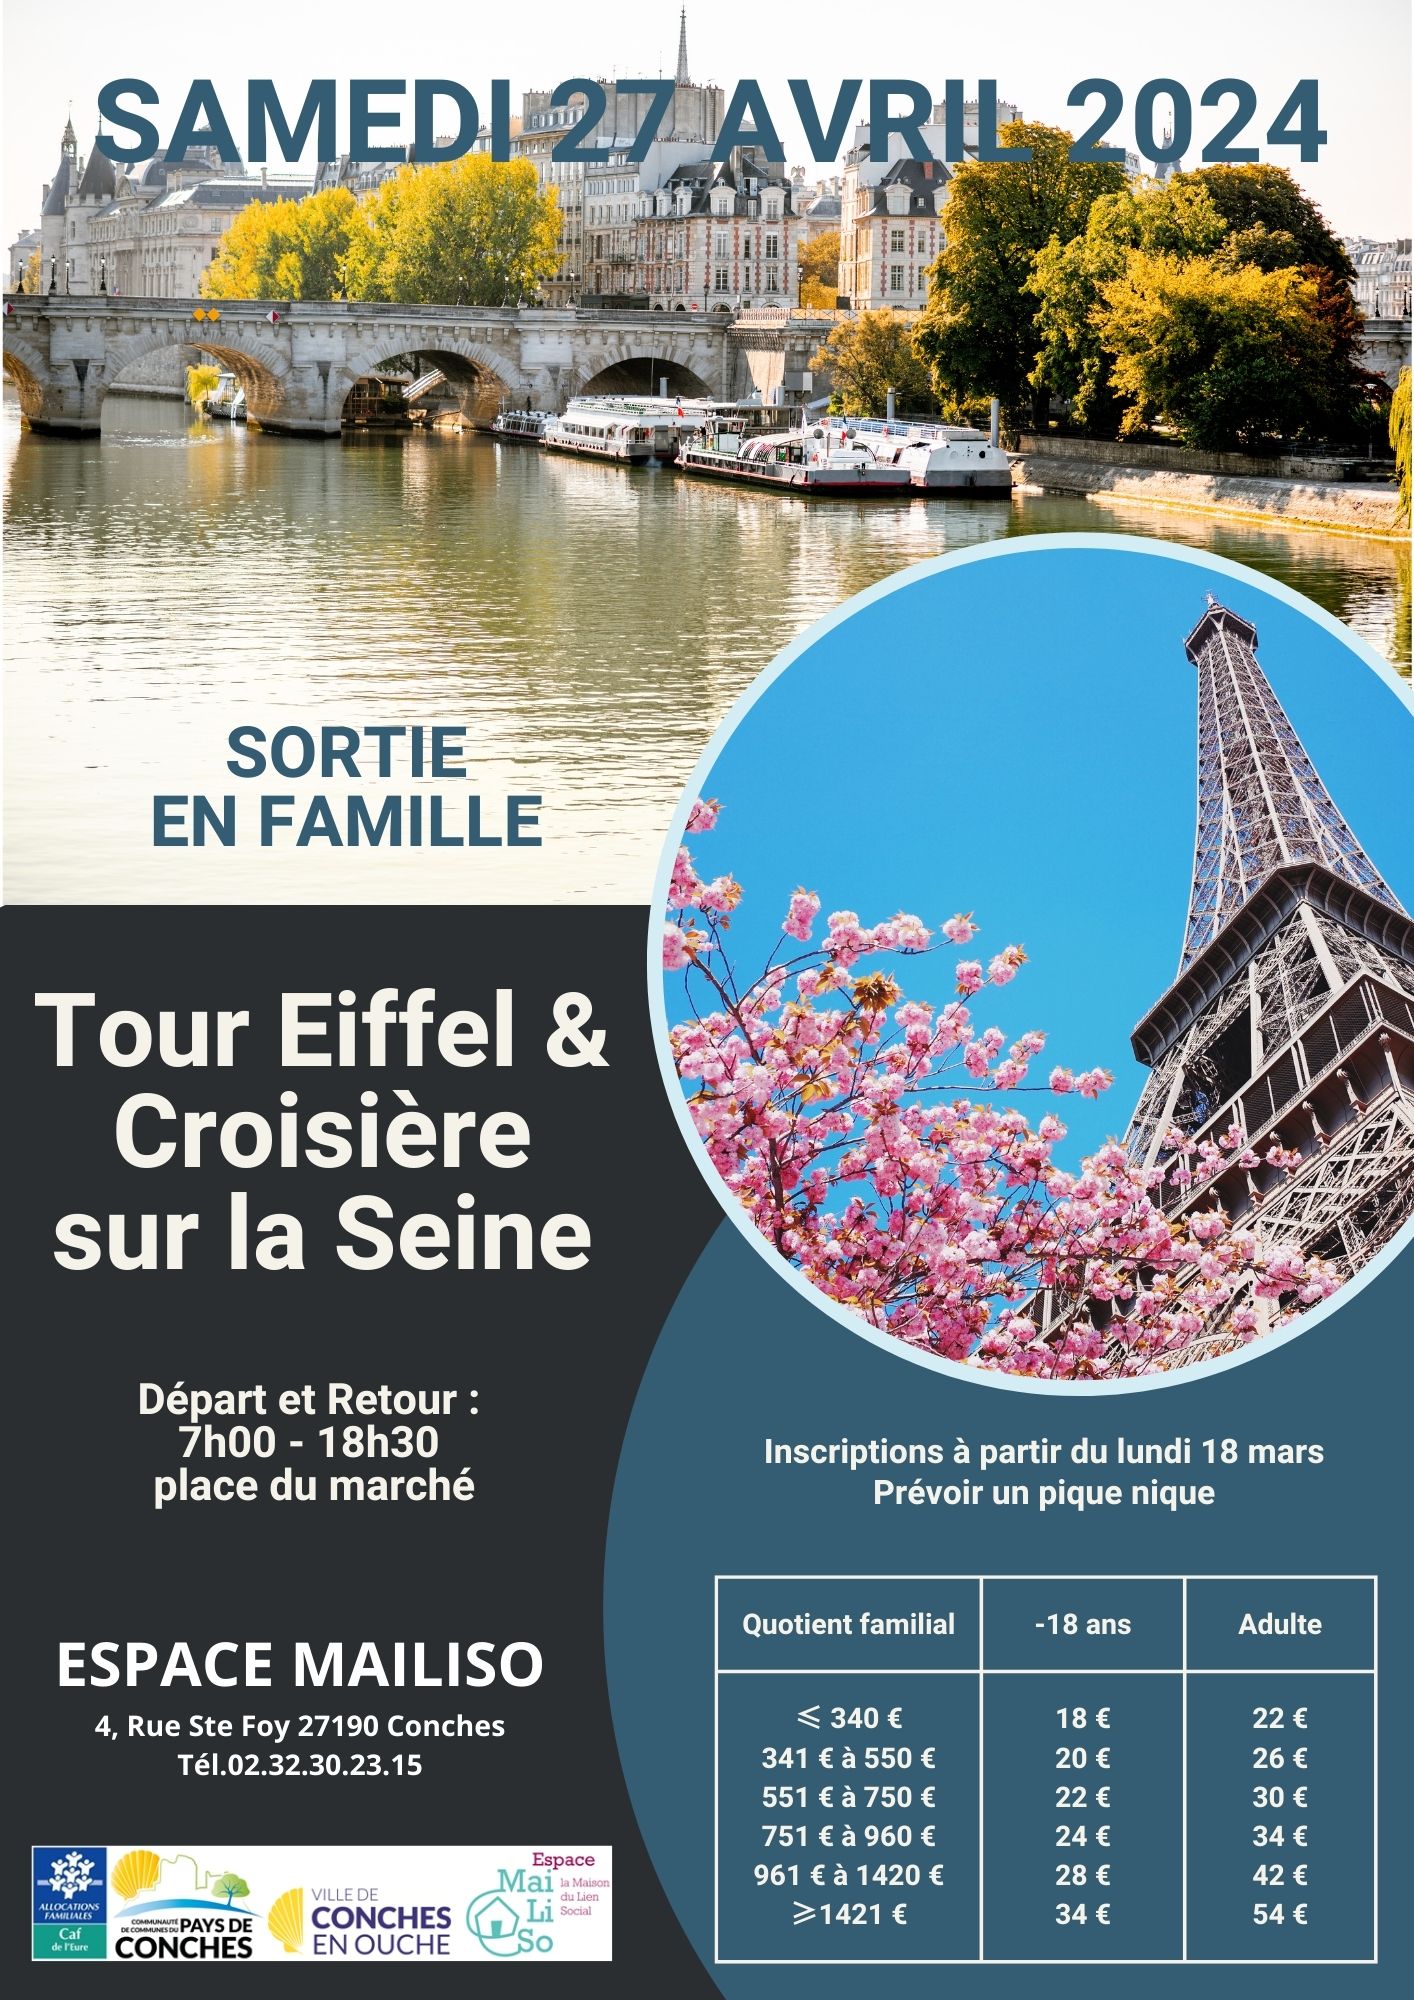 Tour Eiffel & Croisière sur la Seine samedi 27 avril 2024.jpg